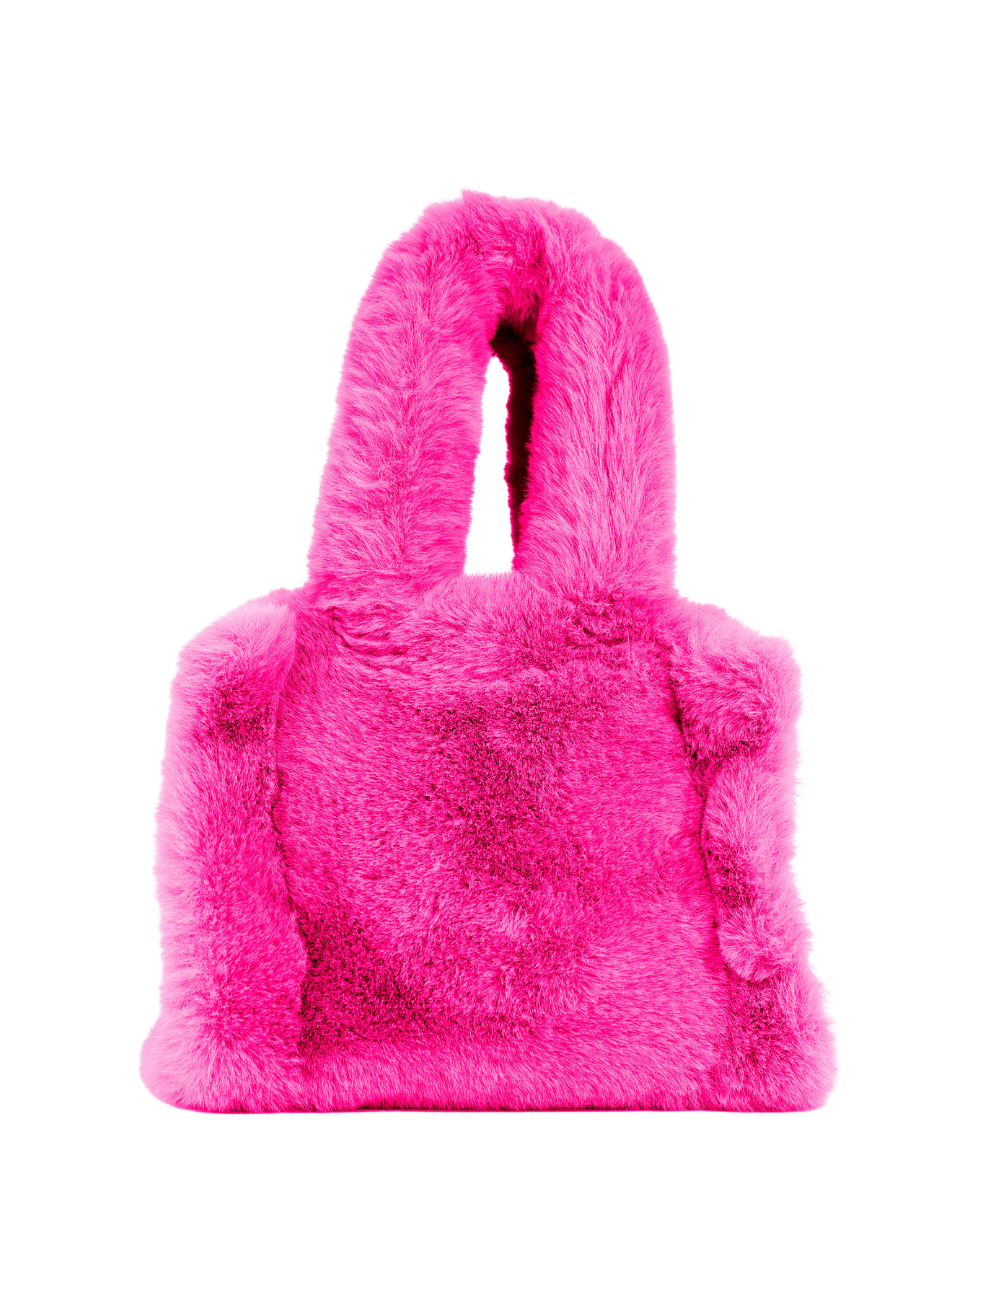 Small Mini Tote Bag Luxury Canada Accessories Bright Pink Fashion Purse Faux Fur